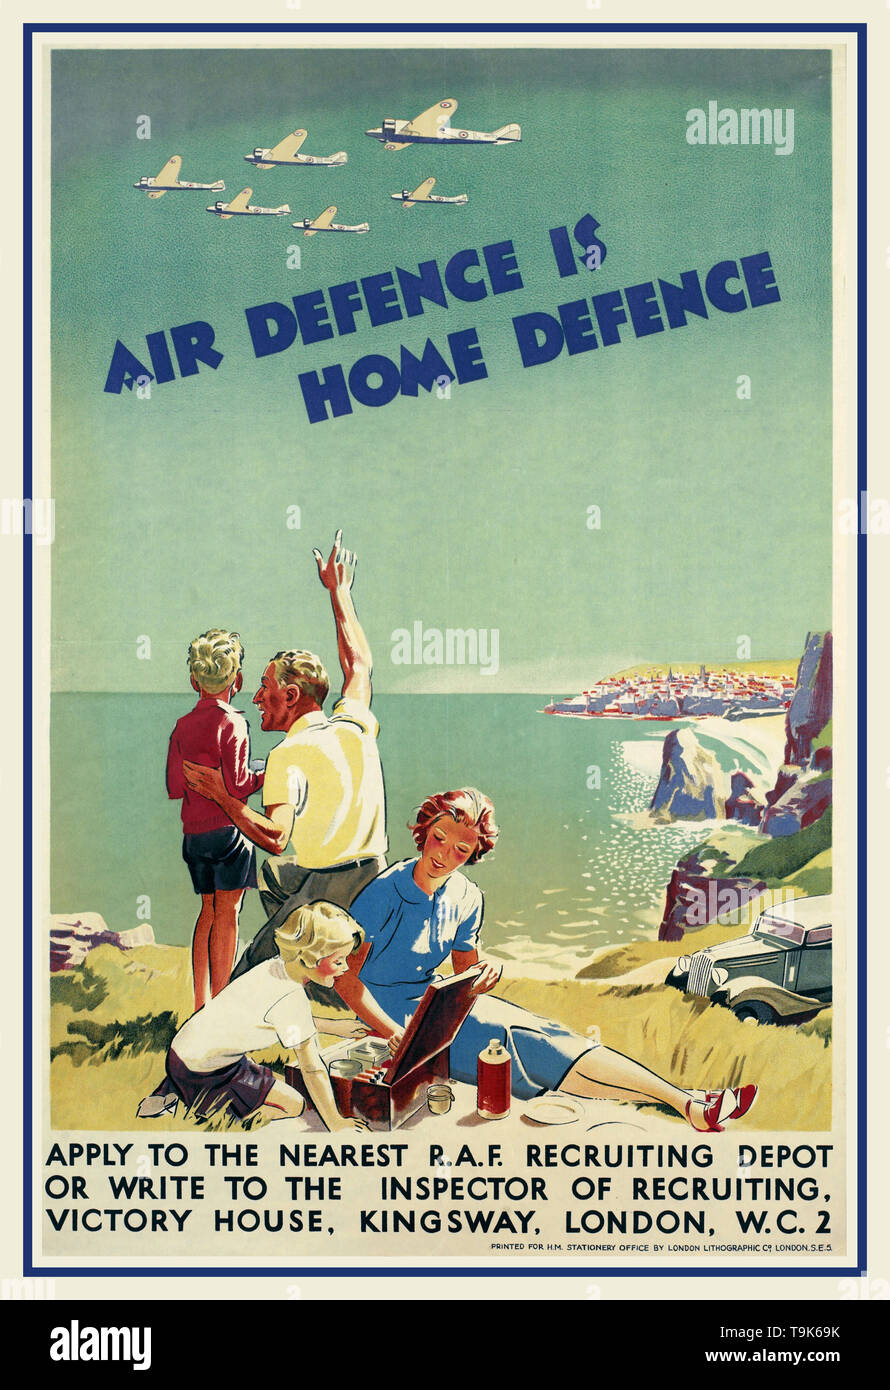 Jahrgang 1940 WW2 Propaganda recruiting Poster für die RAF'Air Defense Home Defence" der Familie bei einem Picknick auf einer Klippe am Meer. Die Mutter und die Tochter sitzen mit einem behindern, während der Vater den zeigt, der seinen Sohn sechs RAF-Flugzeuge, die in Formation Overhead. Auto der Familie ist im Hintergrund geparkt, und eine kleine Stadt ist, in der Ferne auf der anderen Seite der Bucht sichtbar. "AIR DEFENCE IST HOME DEFENSE" GELTEN FÜR DIE NÄCHSTE R.A.F. RECRUITING DEPOT ODER SCHREIBEN SIE INSPEKTOR DES RECRUITING, SIEG HAUS, KINGSWAY, LONDON, W. C.2 gedruckt für 1234567 STATIONERY OFFICE Stockfoto